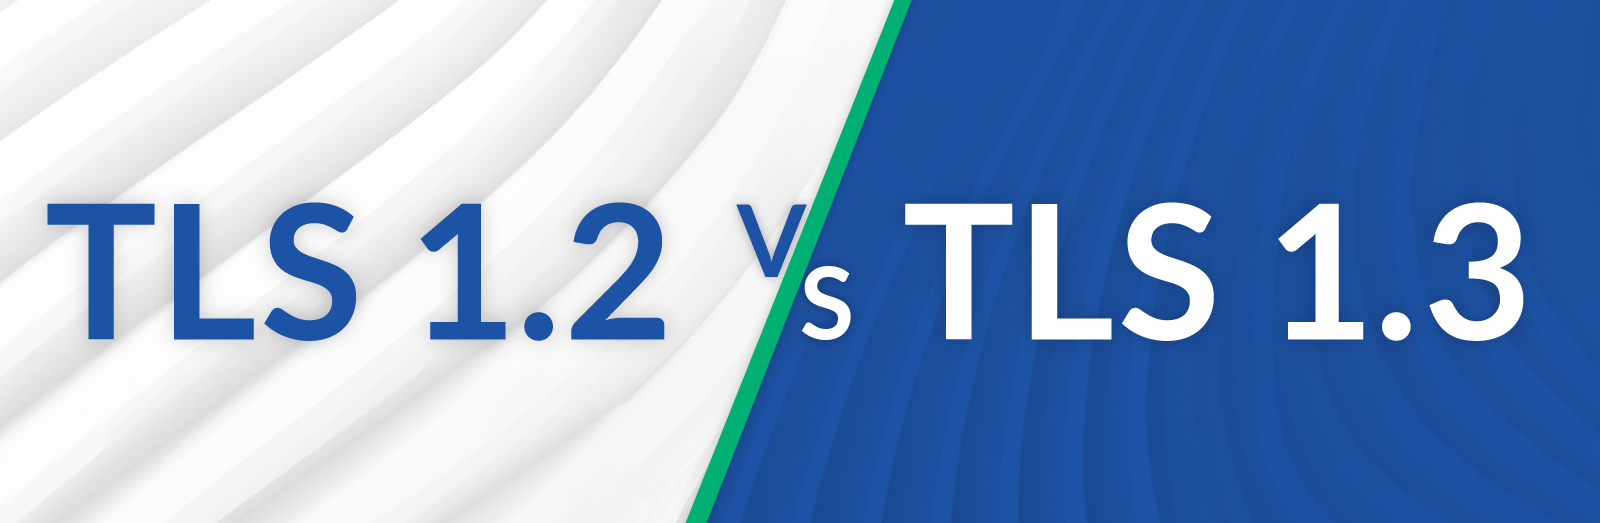 TLS 1.2 vs TLS 1.3